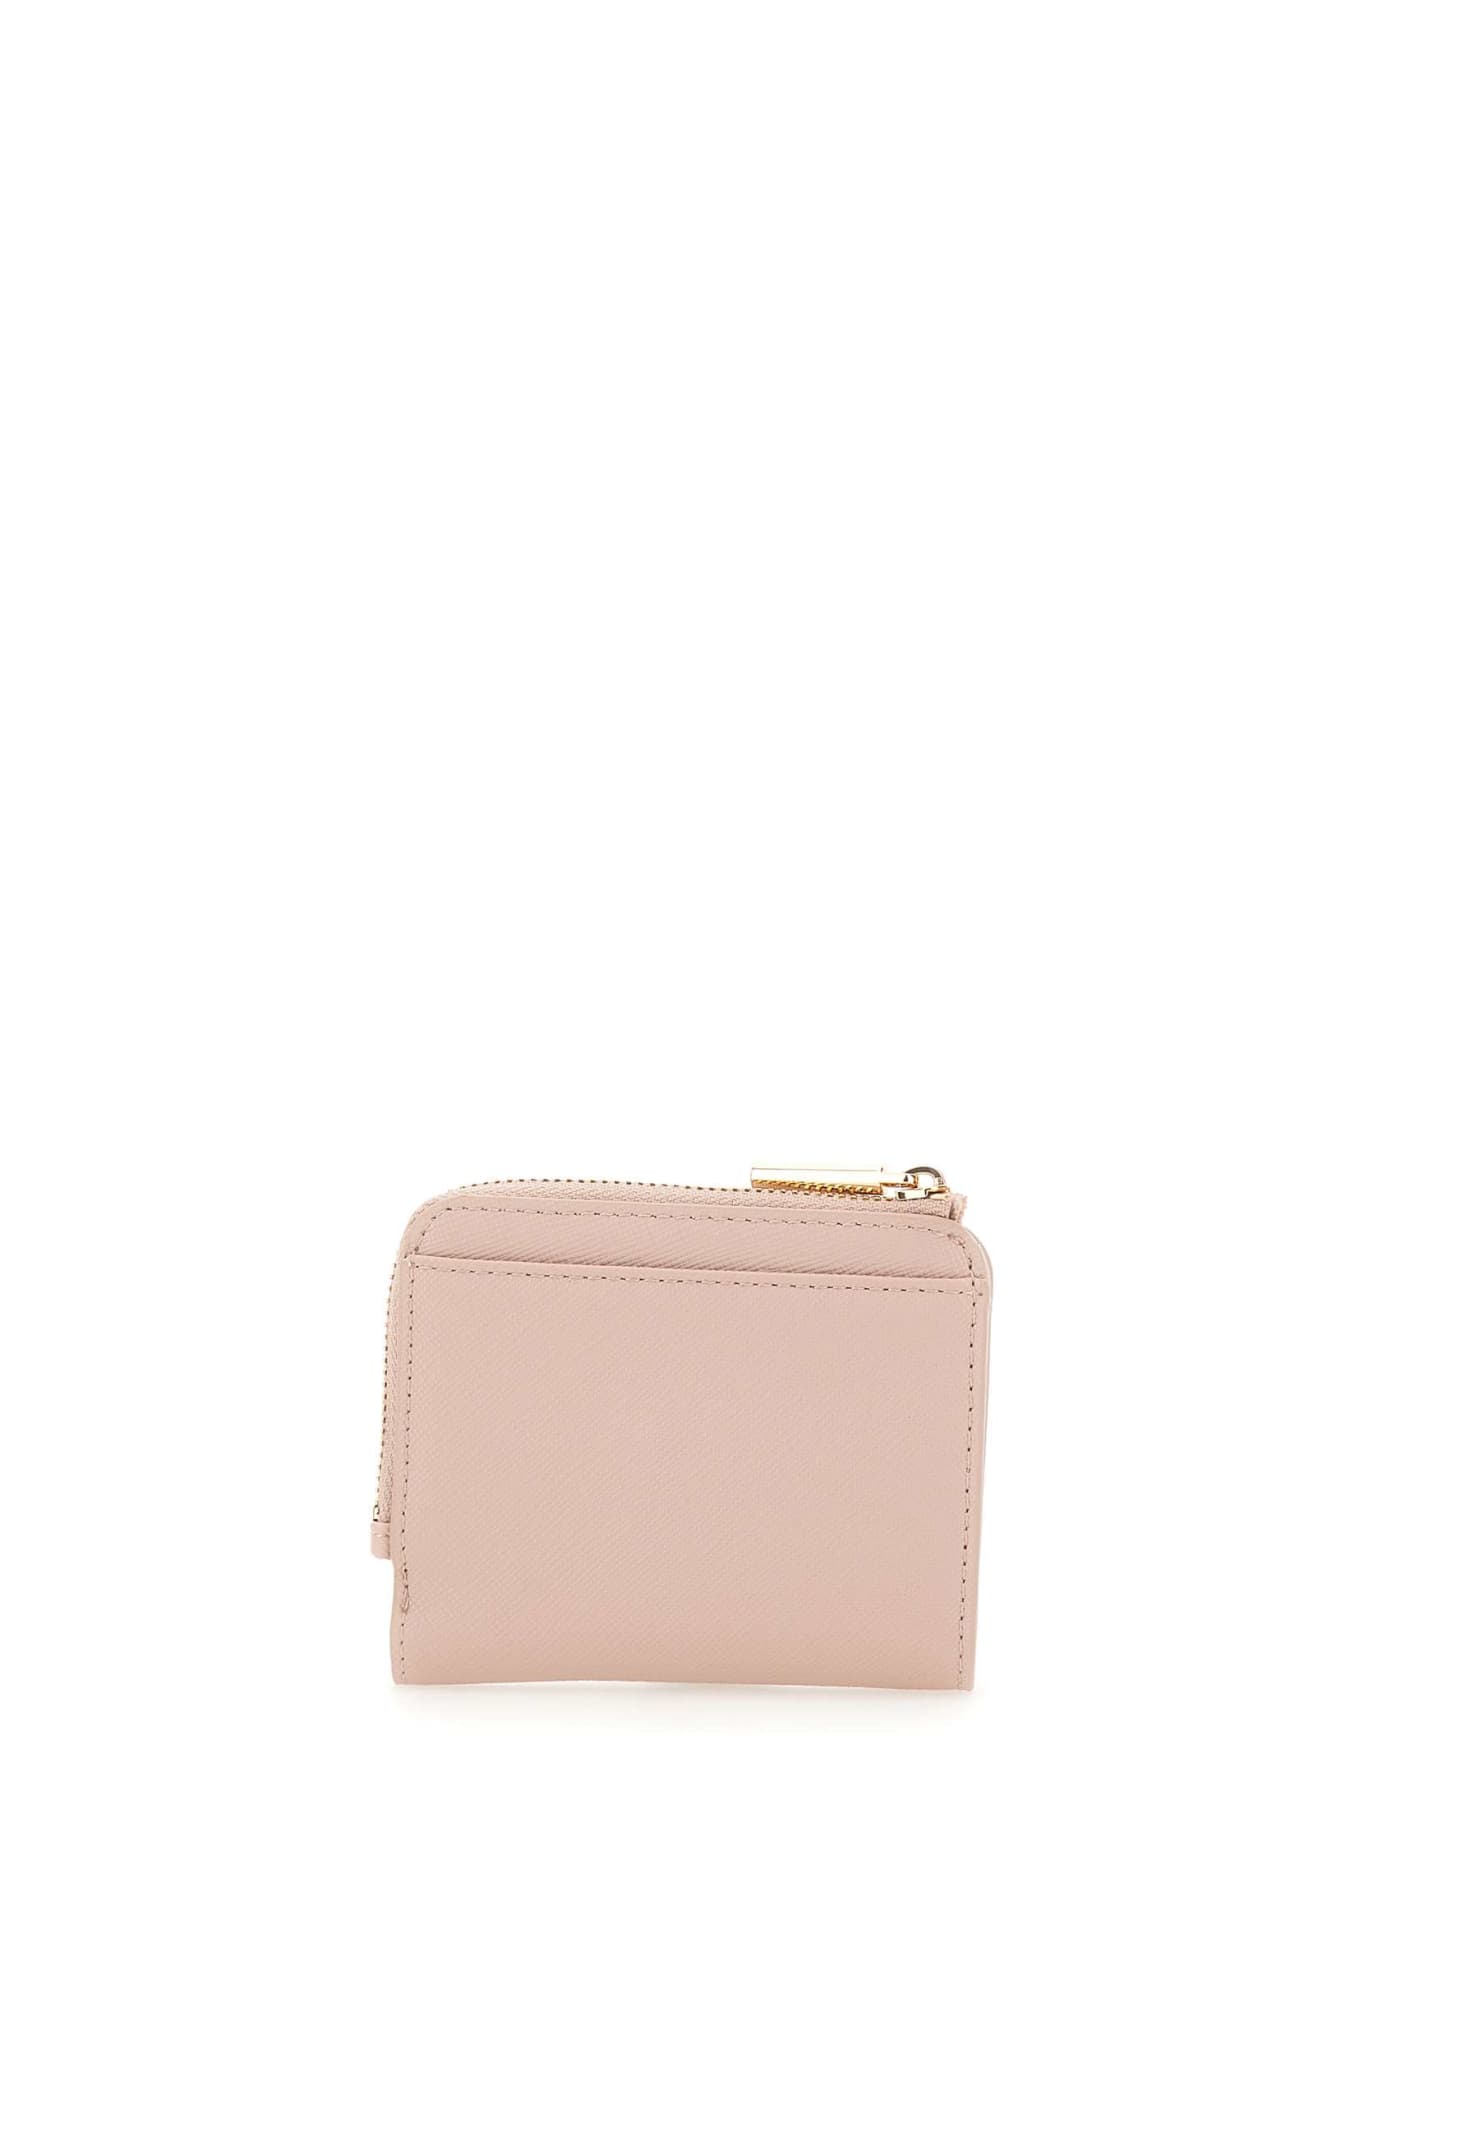 Shop Liu •jo Wallet Caliwen Liu-jo In Pink